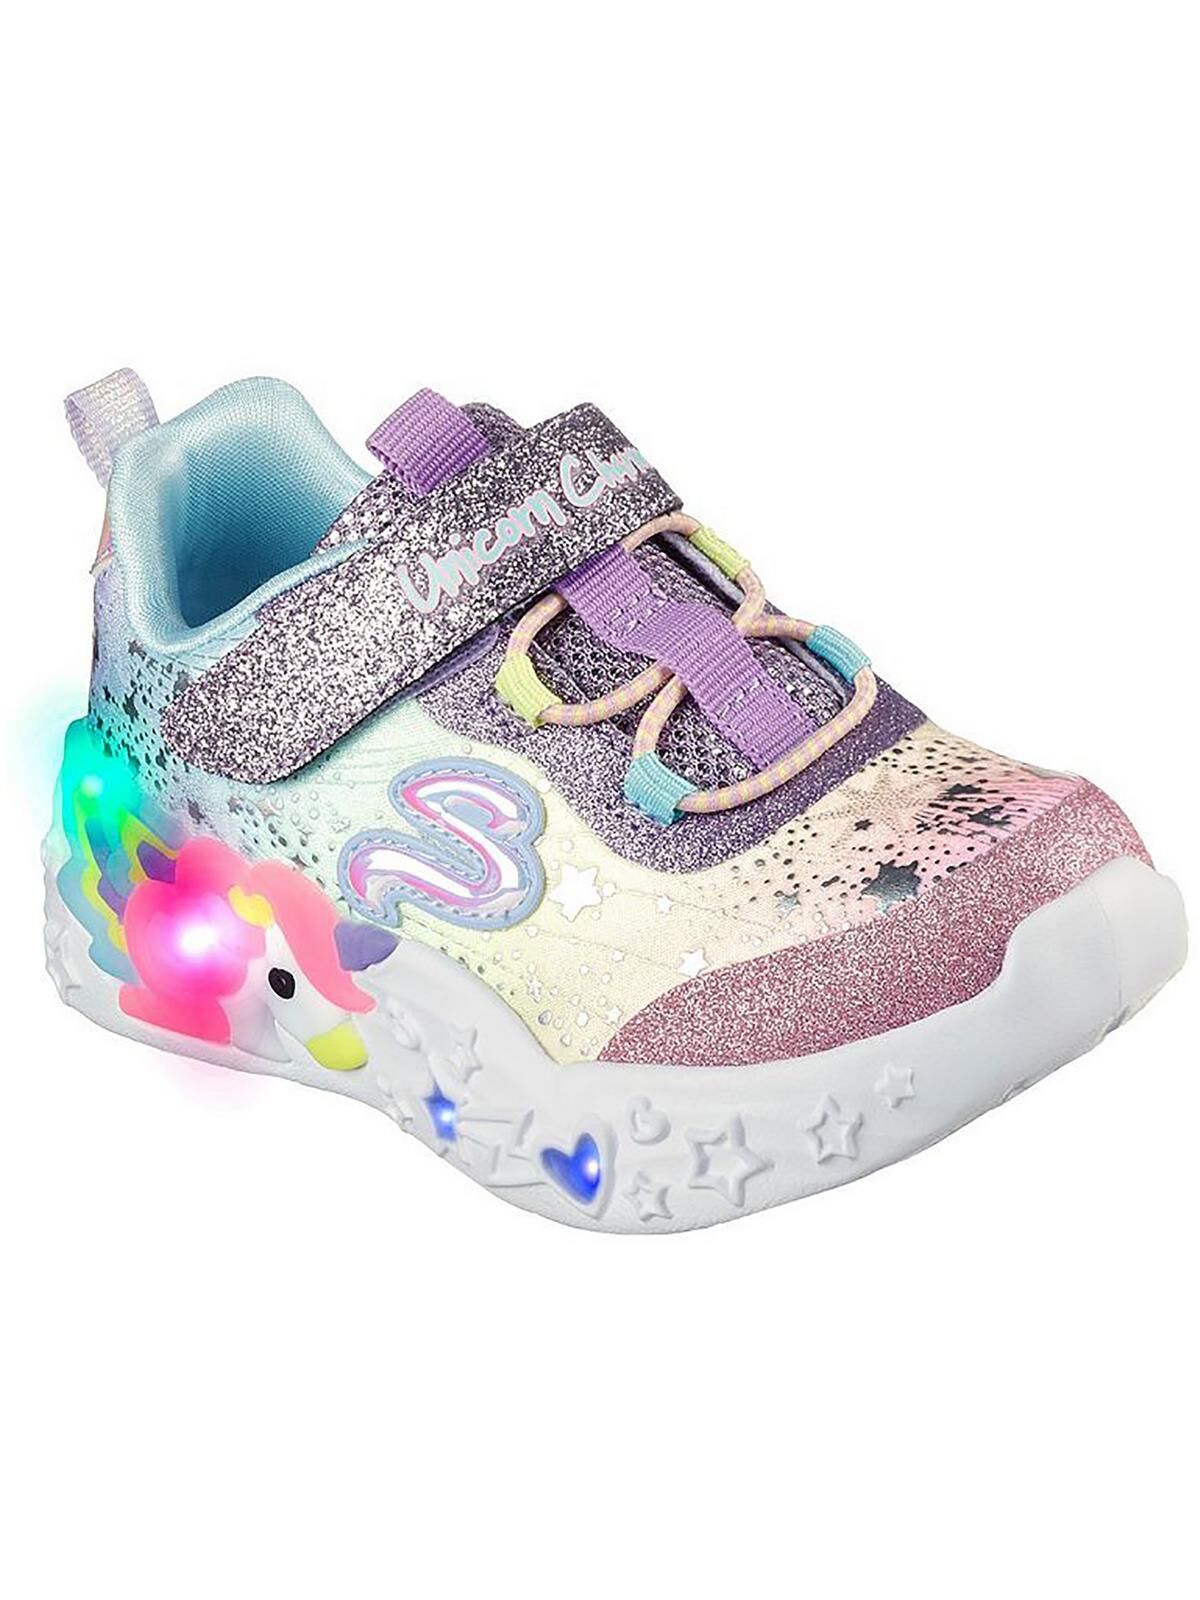 Skechers Twilight Dream Girls Satin Glitter Light-Up Shoes US 6 Toddler female